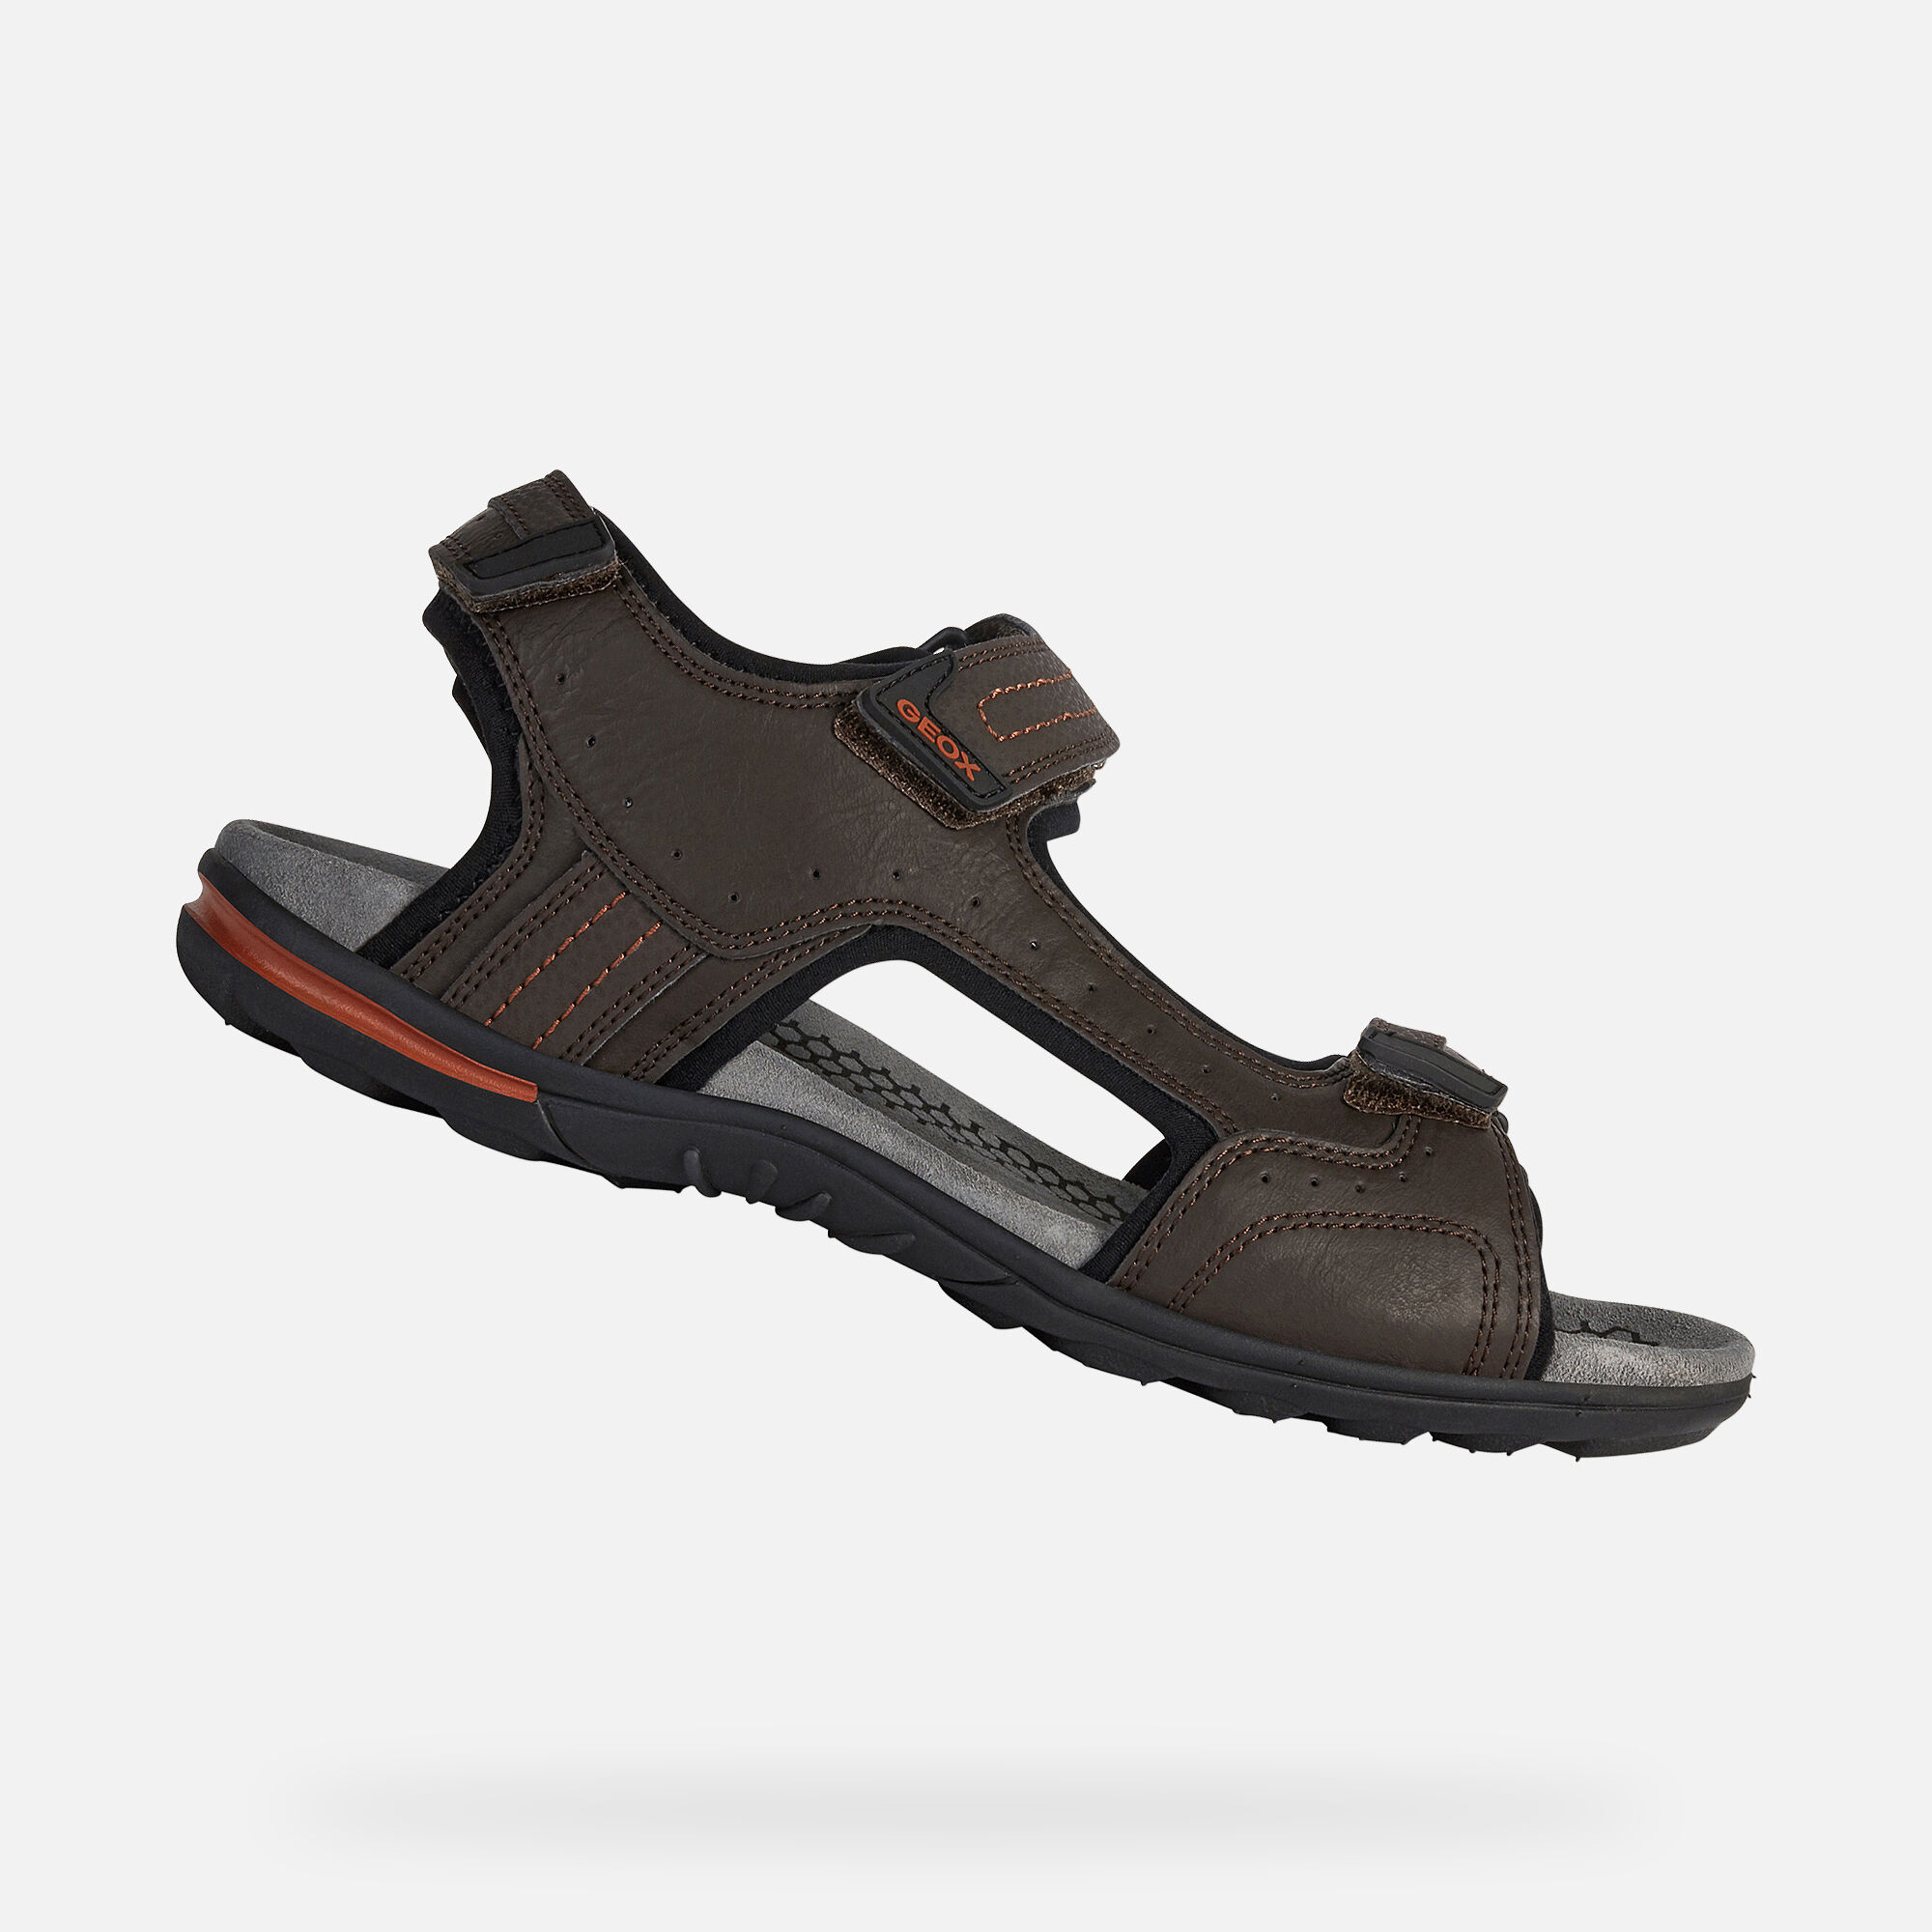 waterproof sandals uk